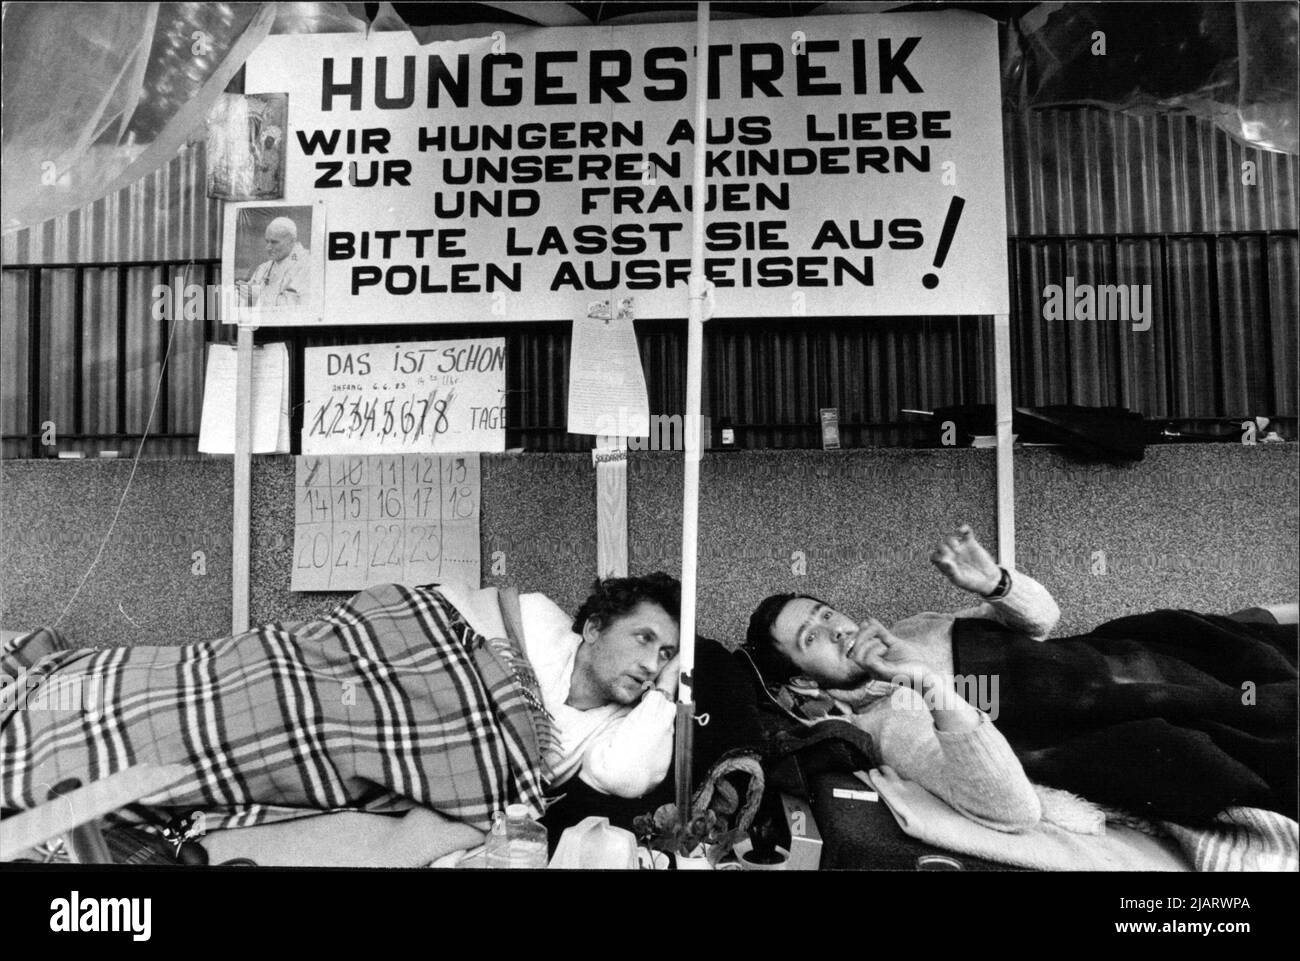 Die Aufnahme zeigt einige Beteiligte des Hungerstreiks vor der polnischen Botschaft in Köln. Stock Photo